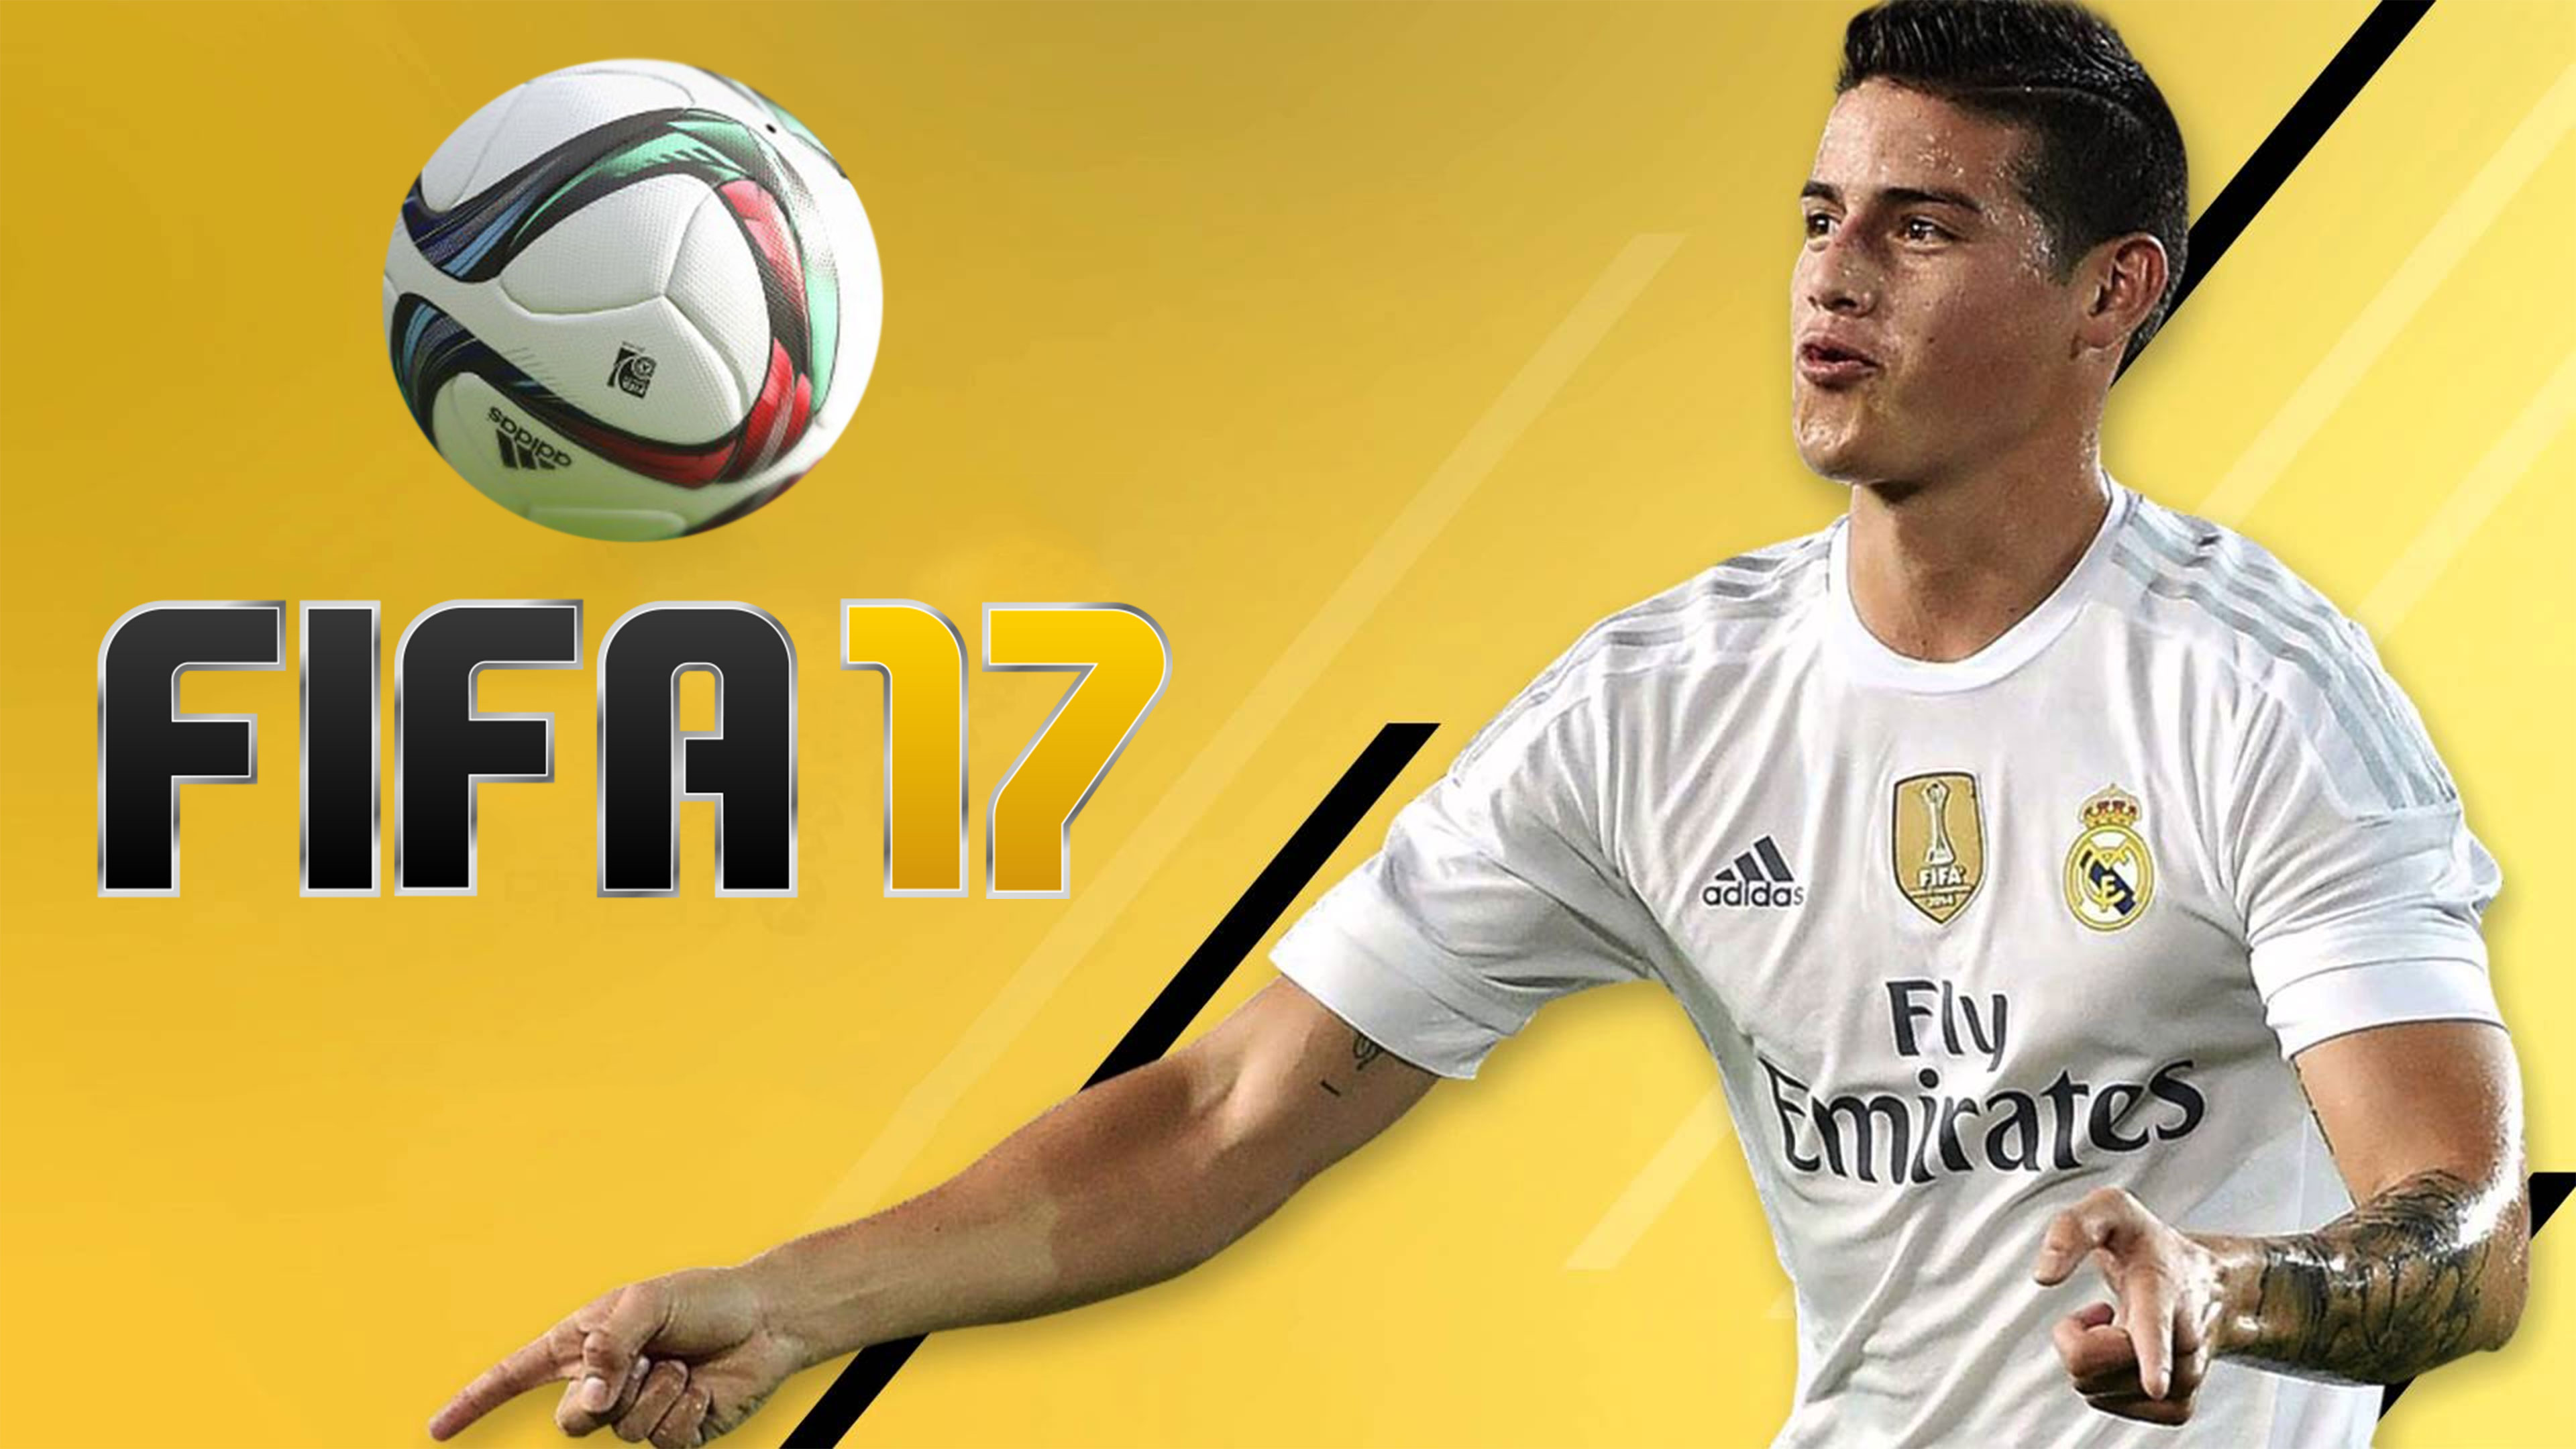 FIFA 17 Wallpapers in Ultra HD | 4K - 3840 x 2160 jpeg 551kB